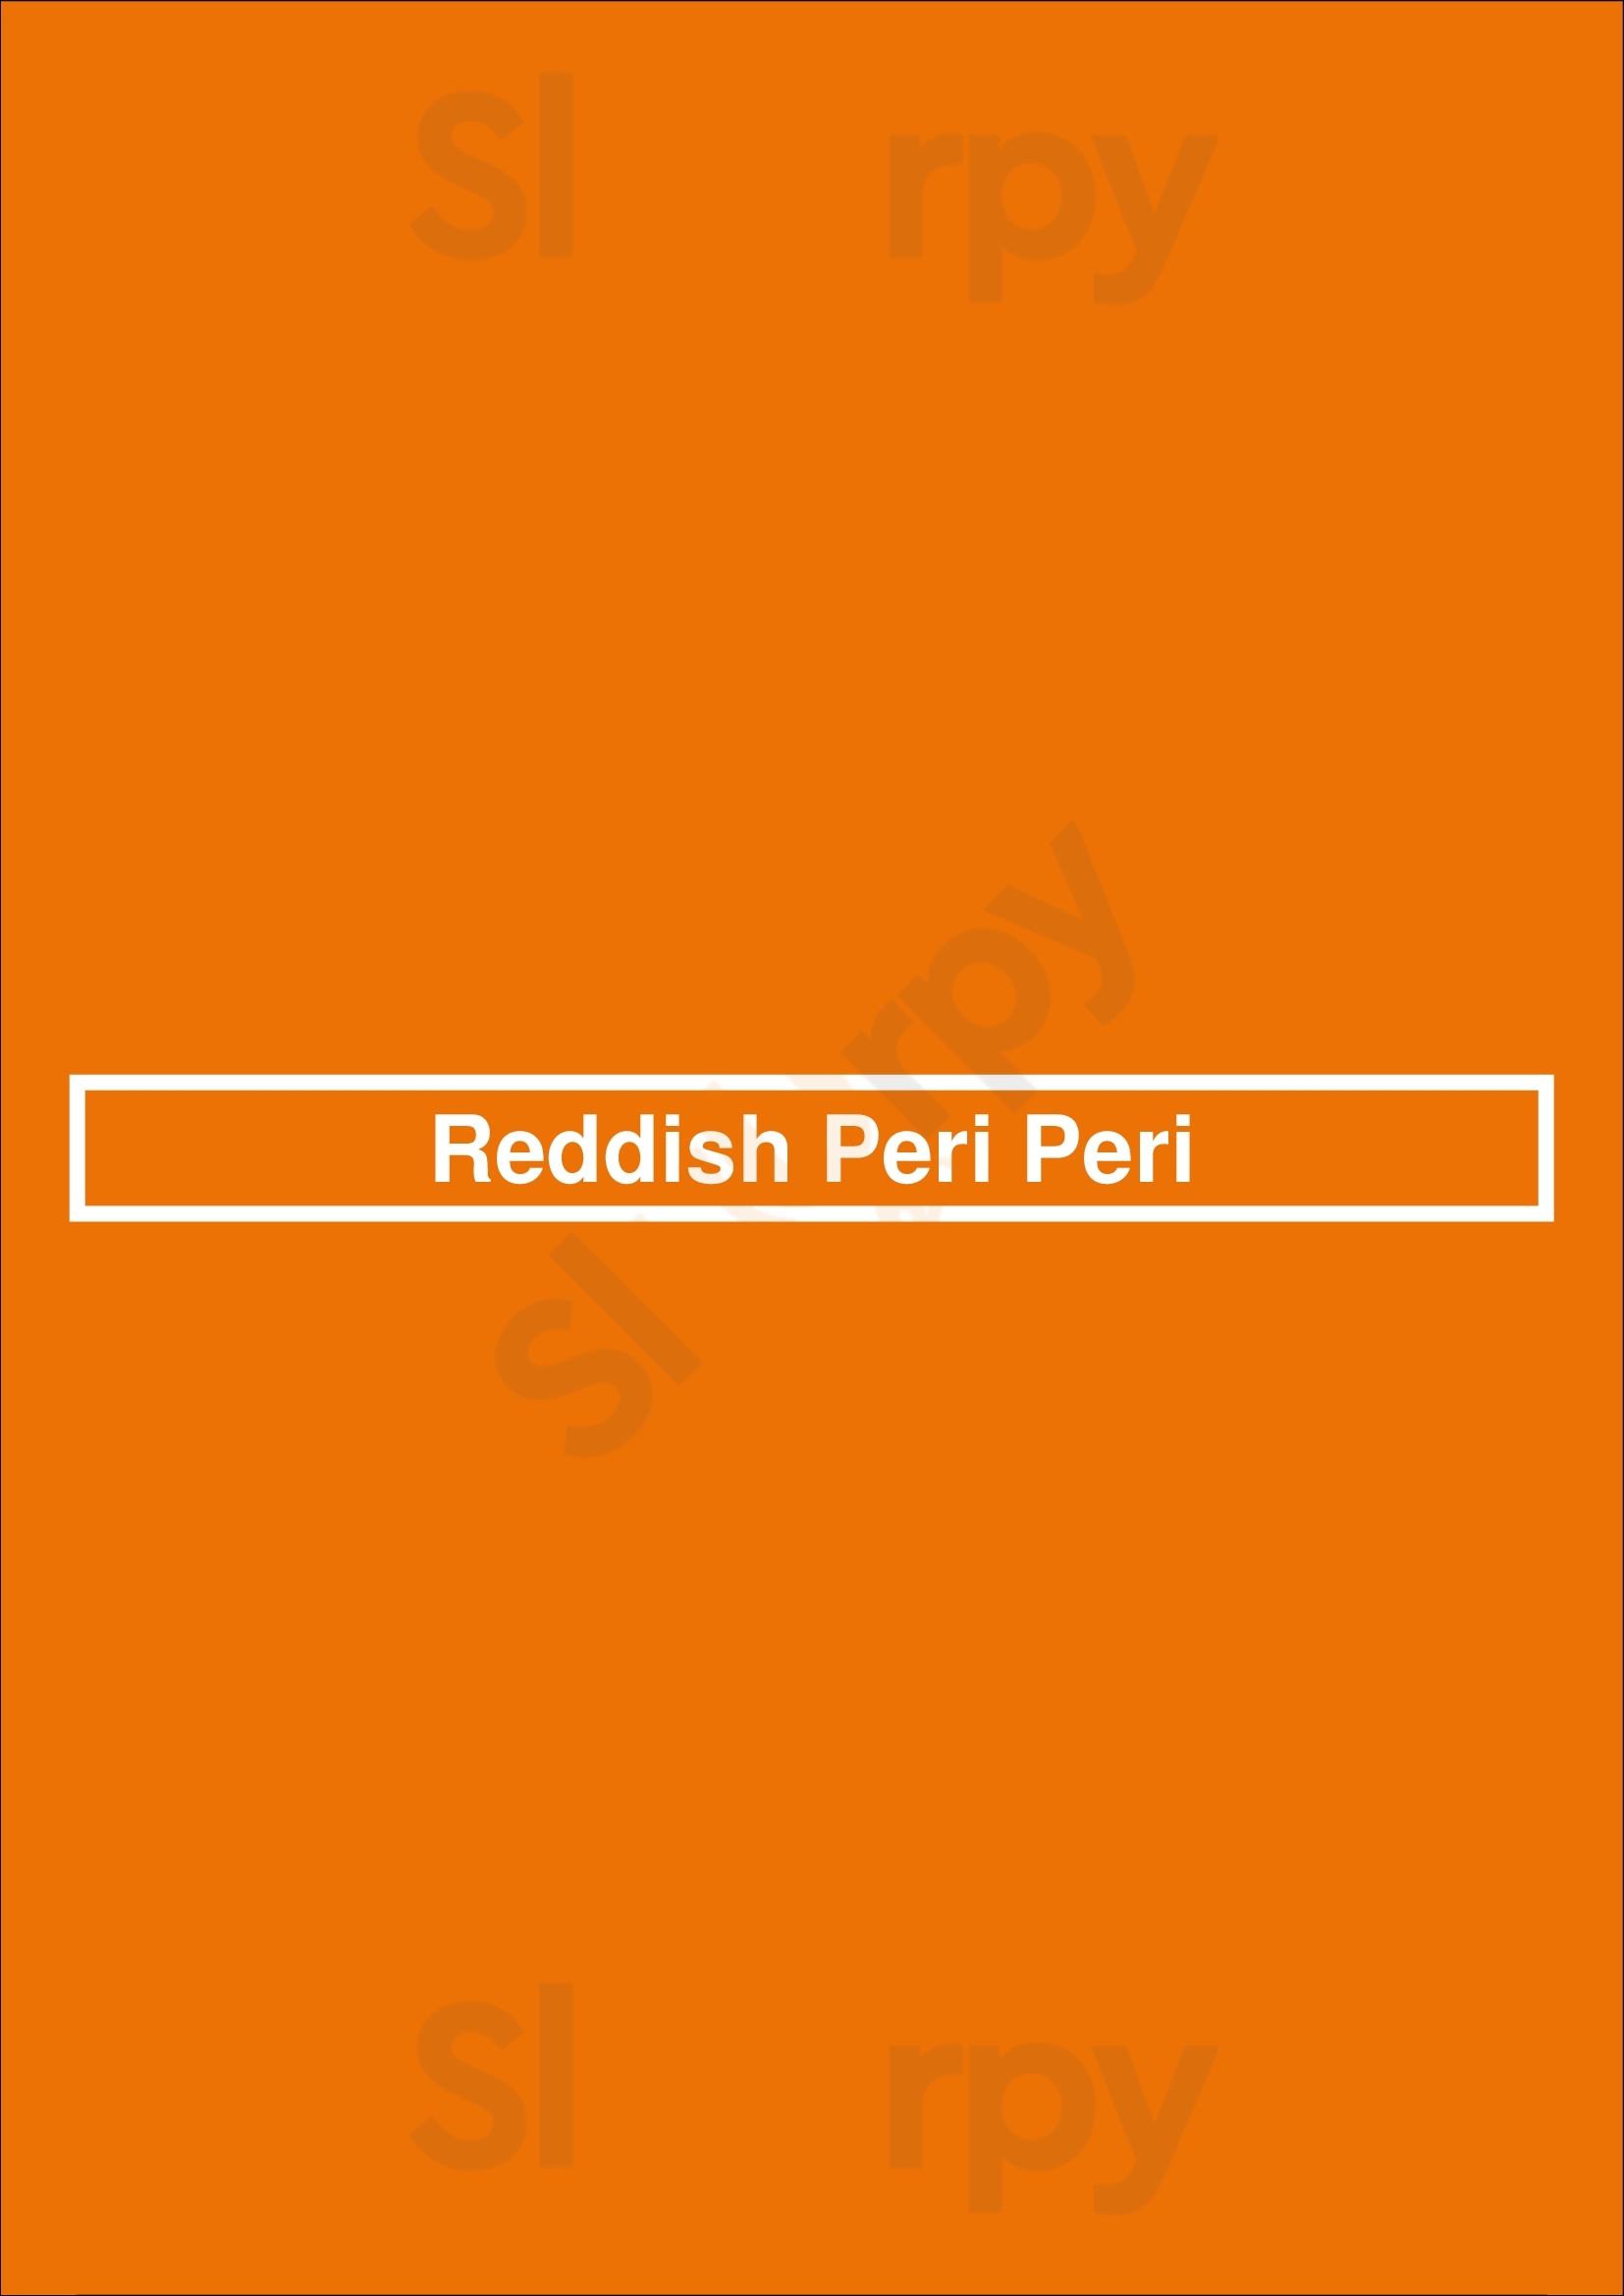 Reddish Grill Stockport Menu - 1